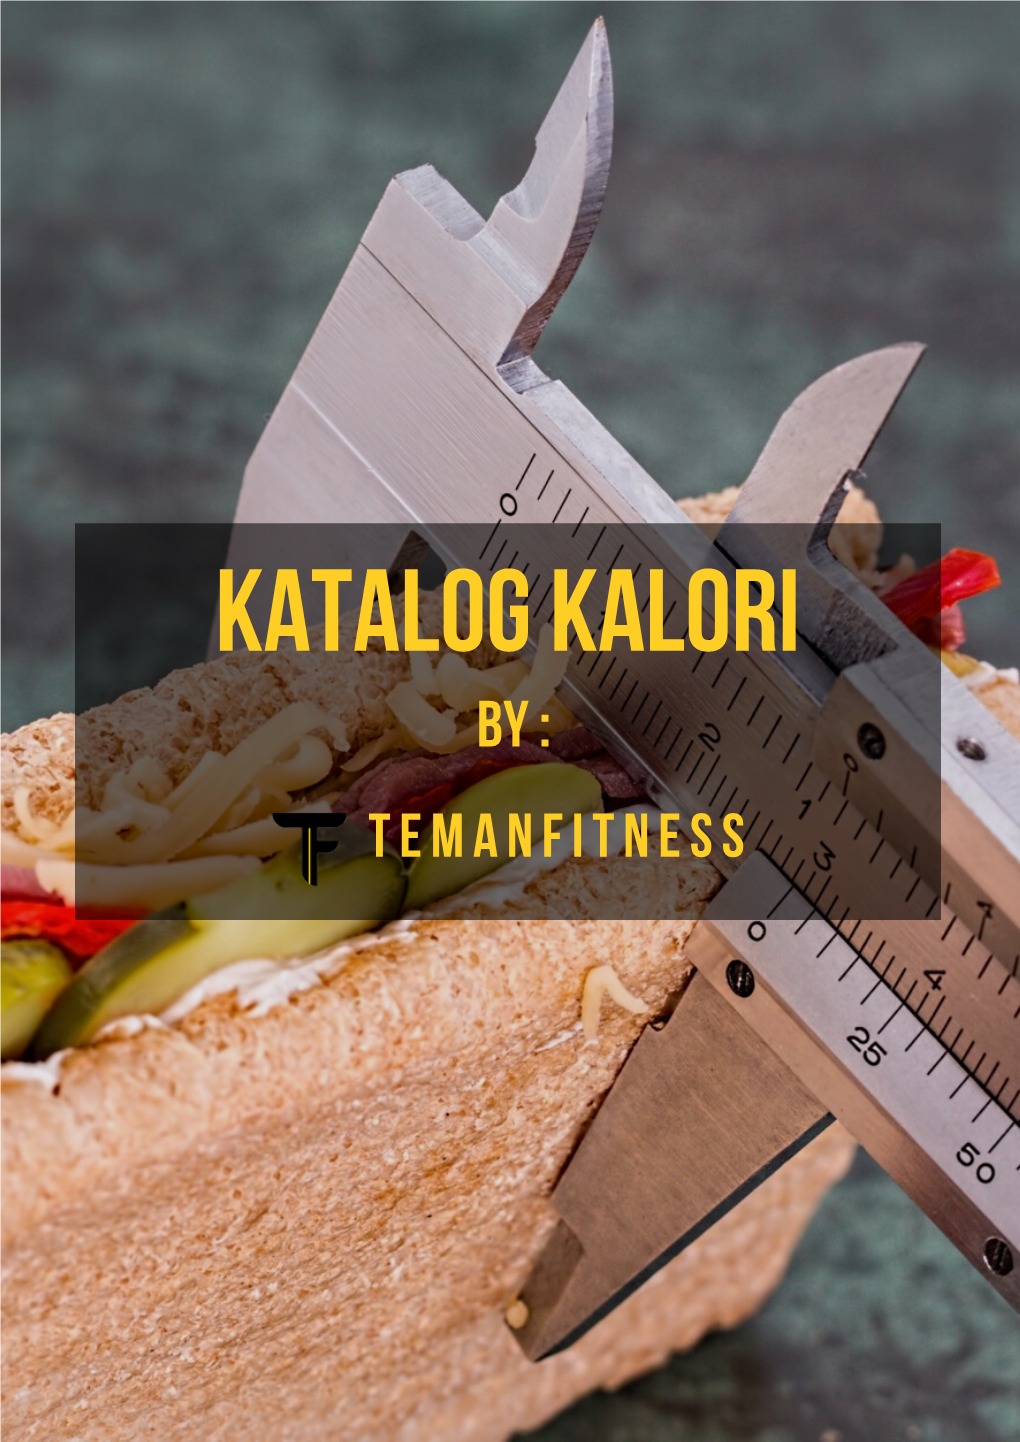 Katalog Kalori by : T E M a N F I T N E S S Contents